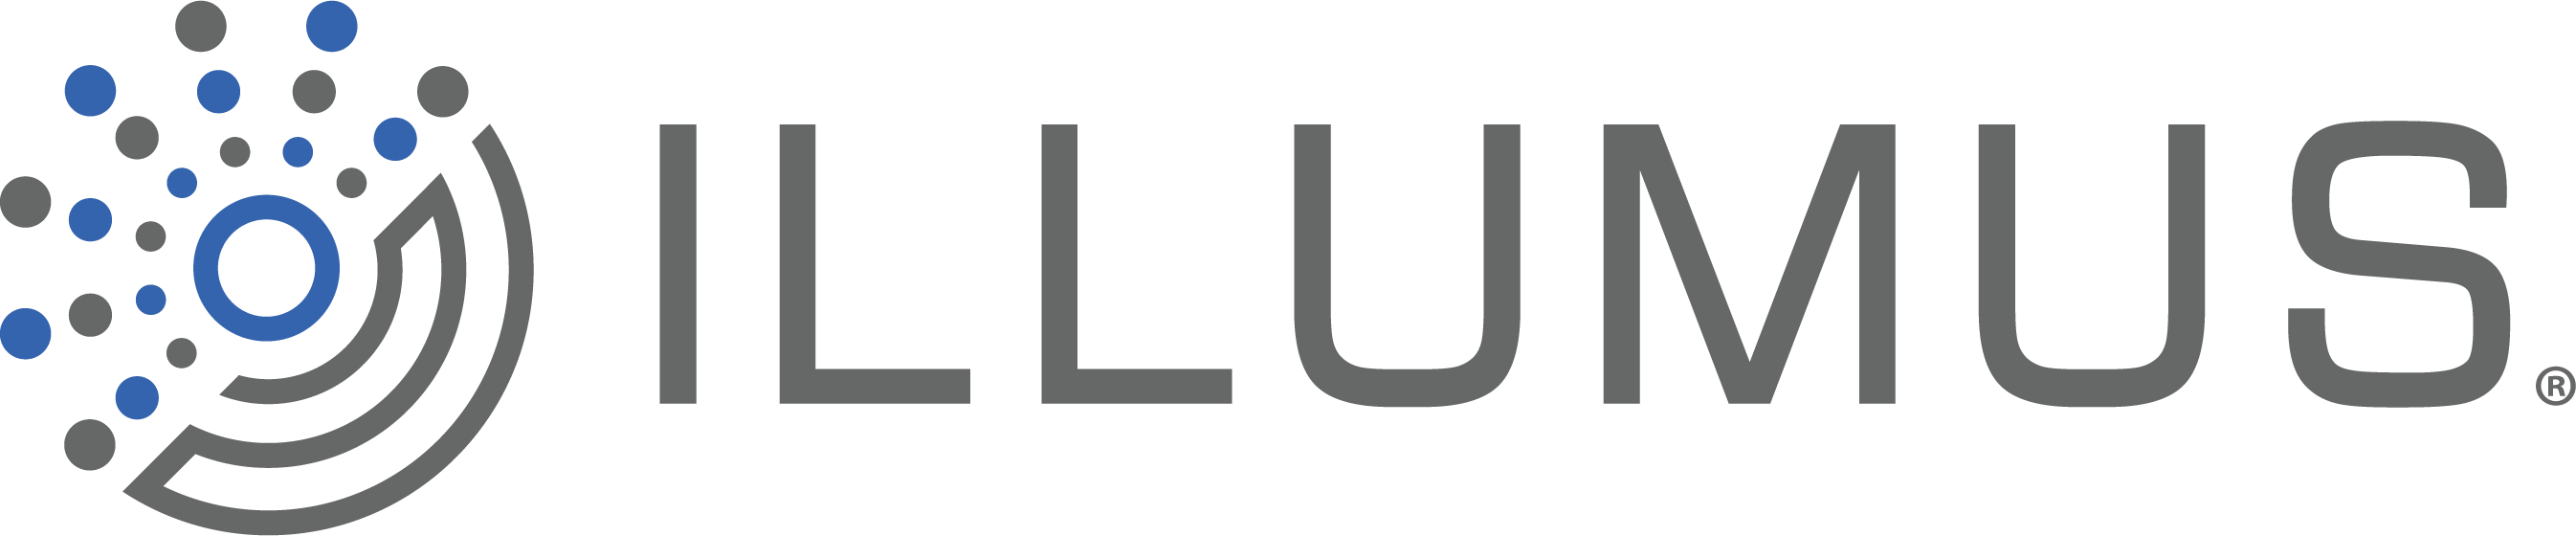 illumus-logo-full-color-rgb.png